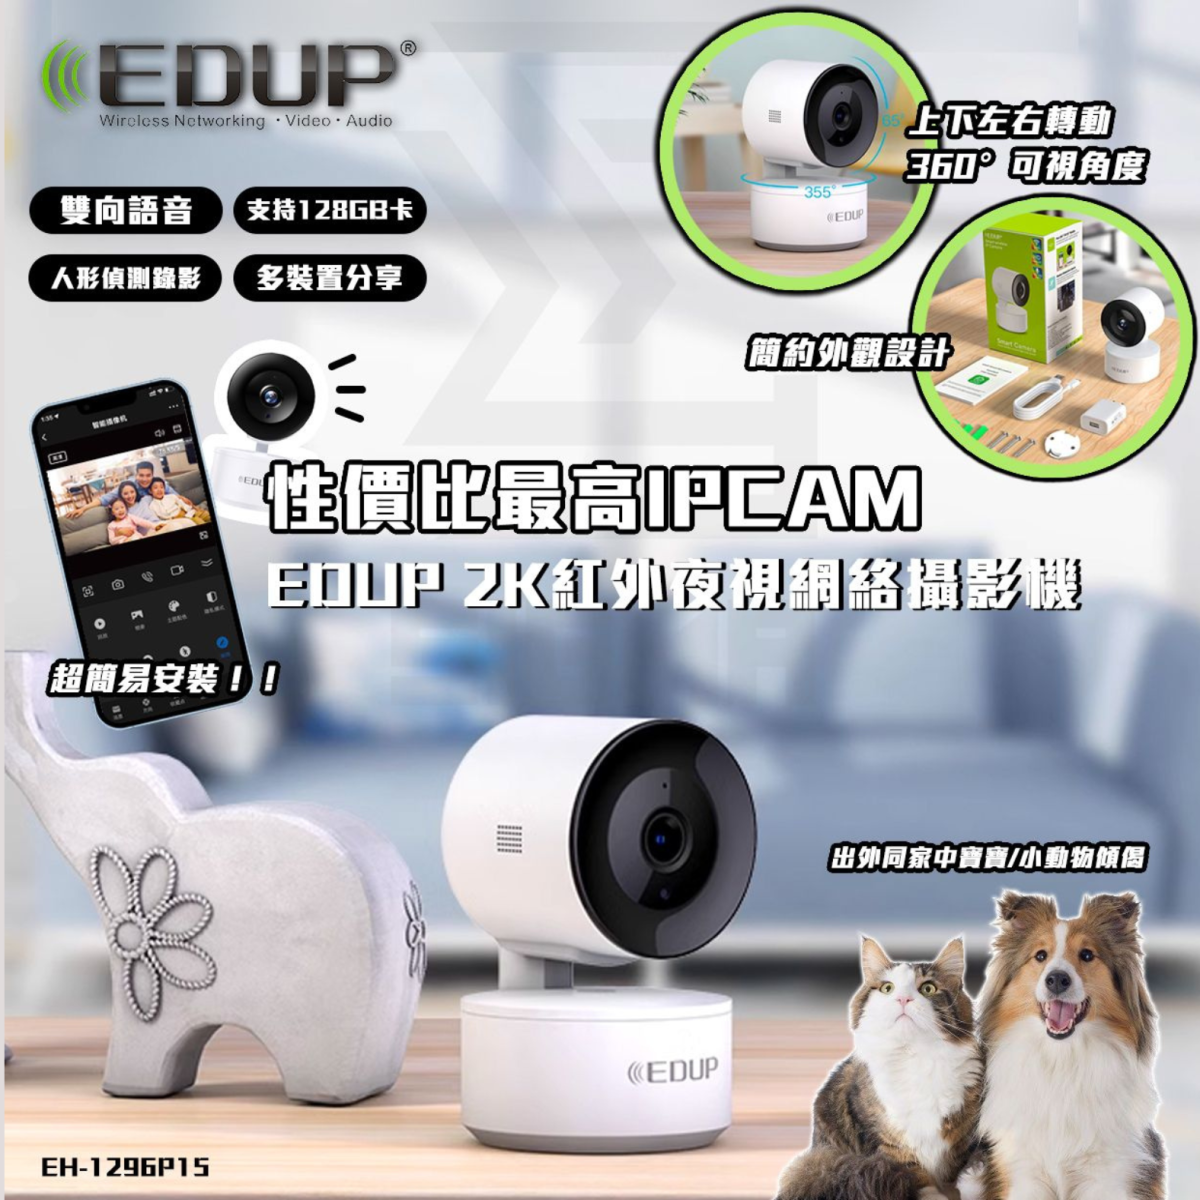 【平價之選】EDUP 高清無線網絡鏡頭 EH-1296P15 可360度轉視角